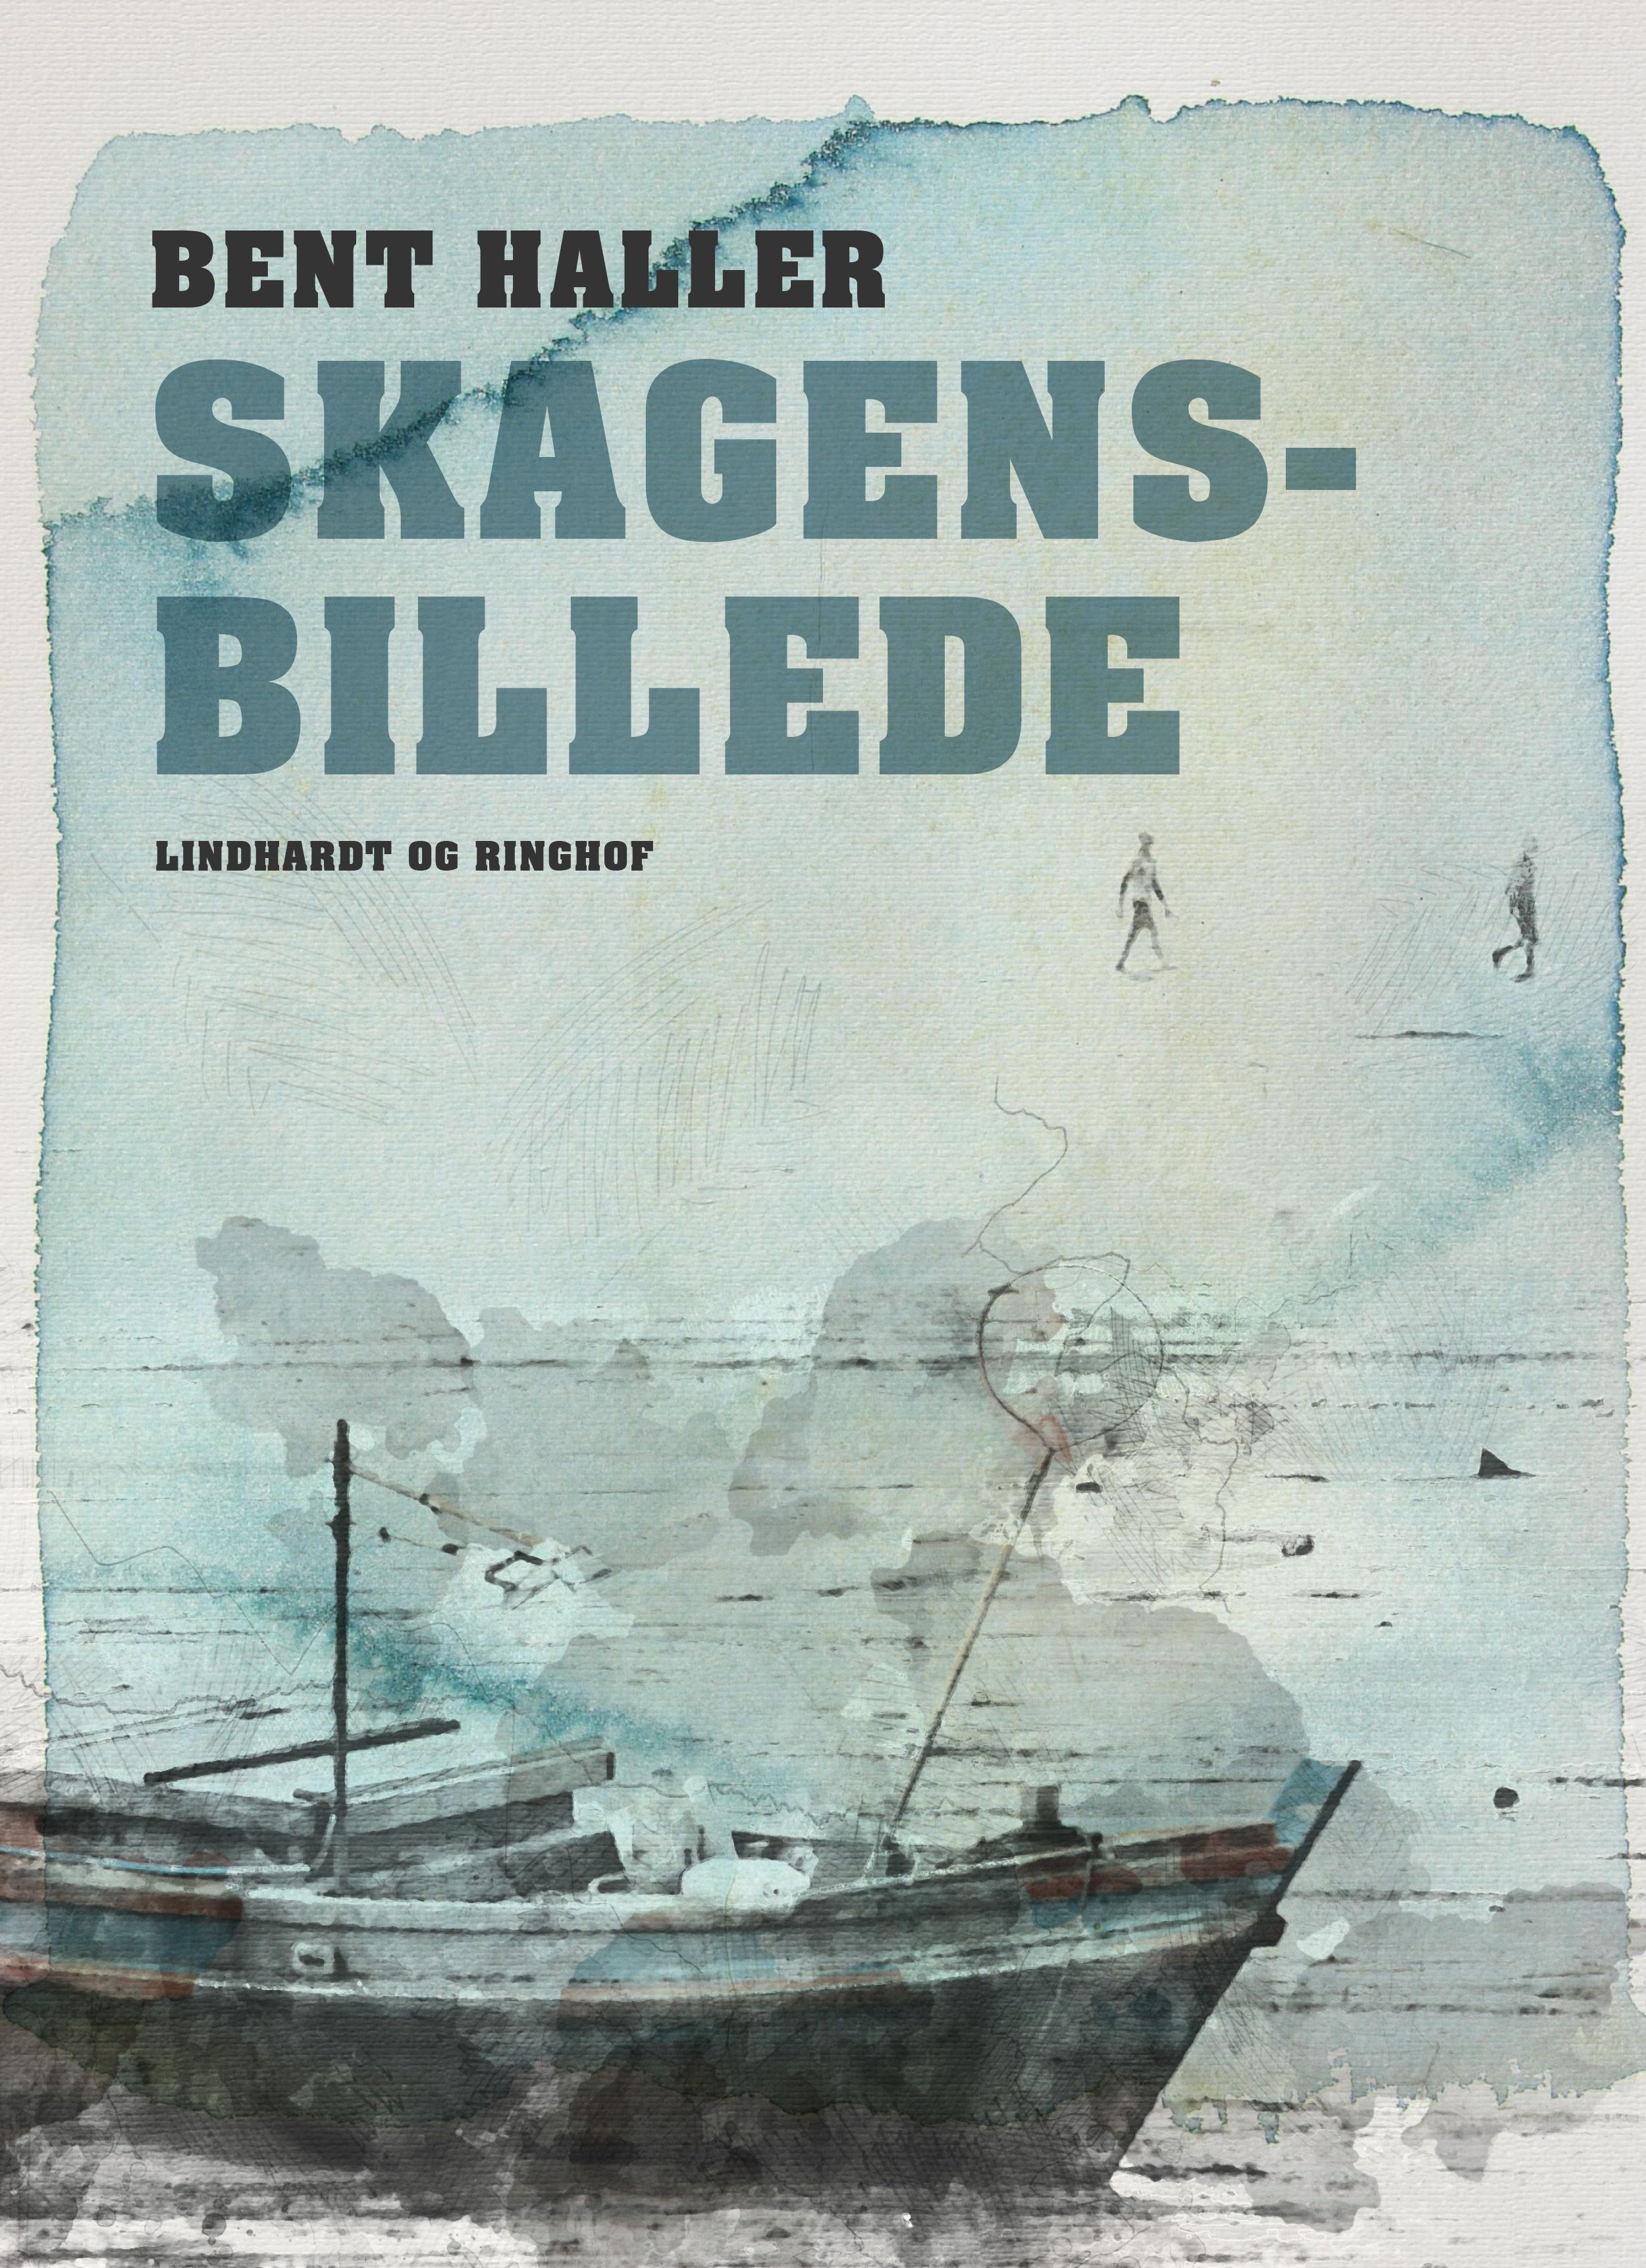 Skagensbillede, e-bog af Bent Haller